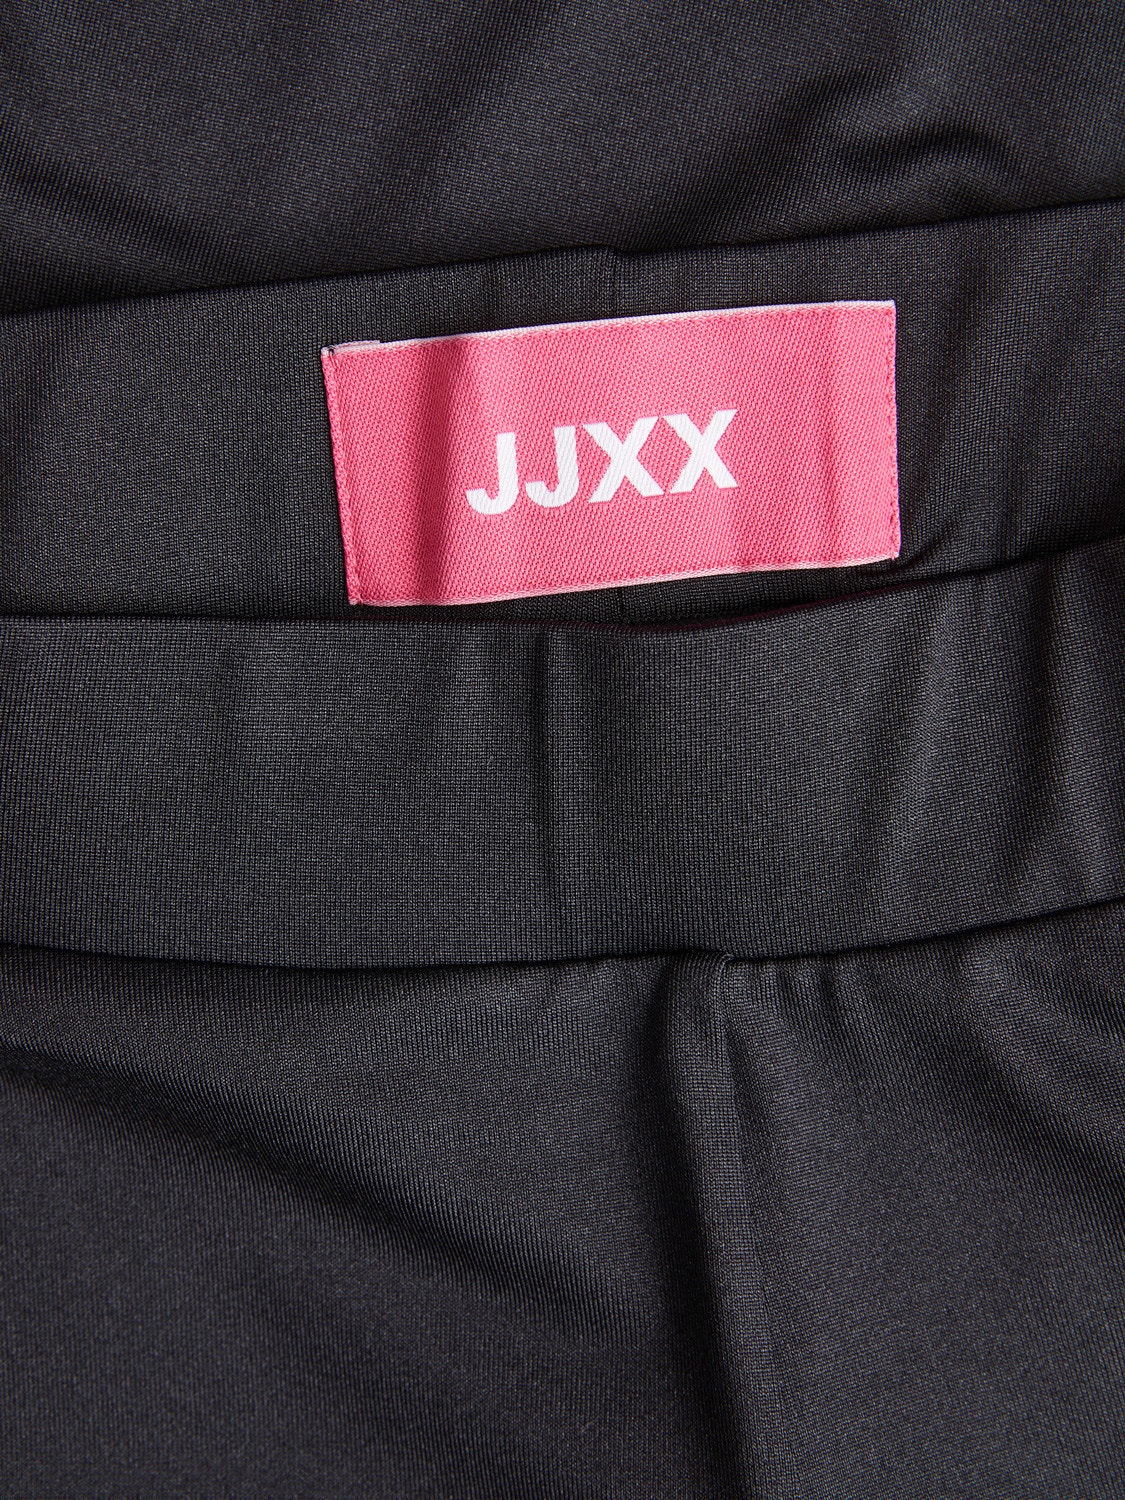 JJXX JXSILLE Getry -Black - 12248646